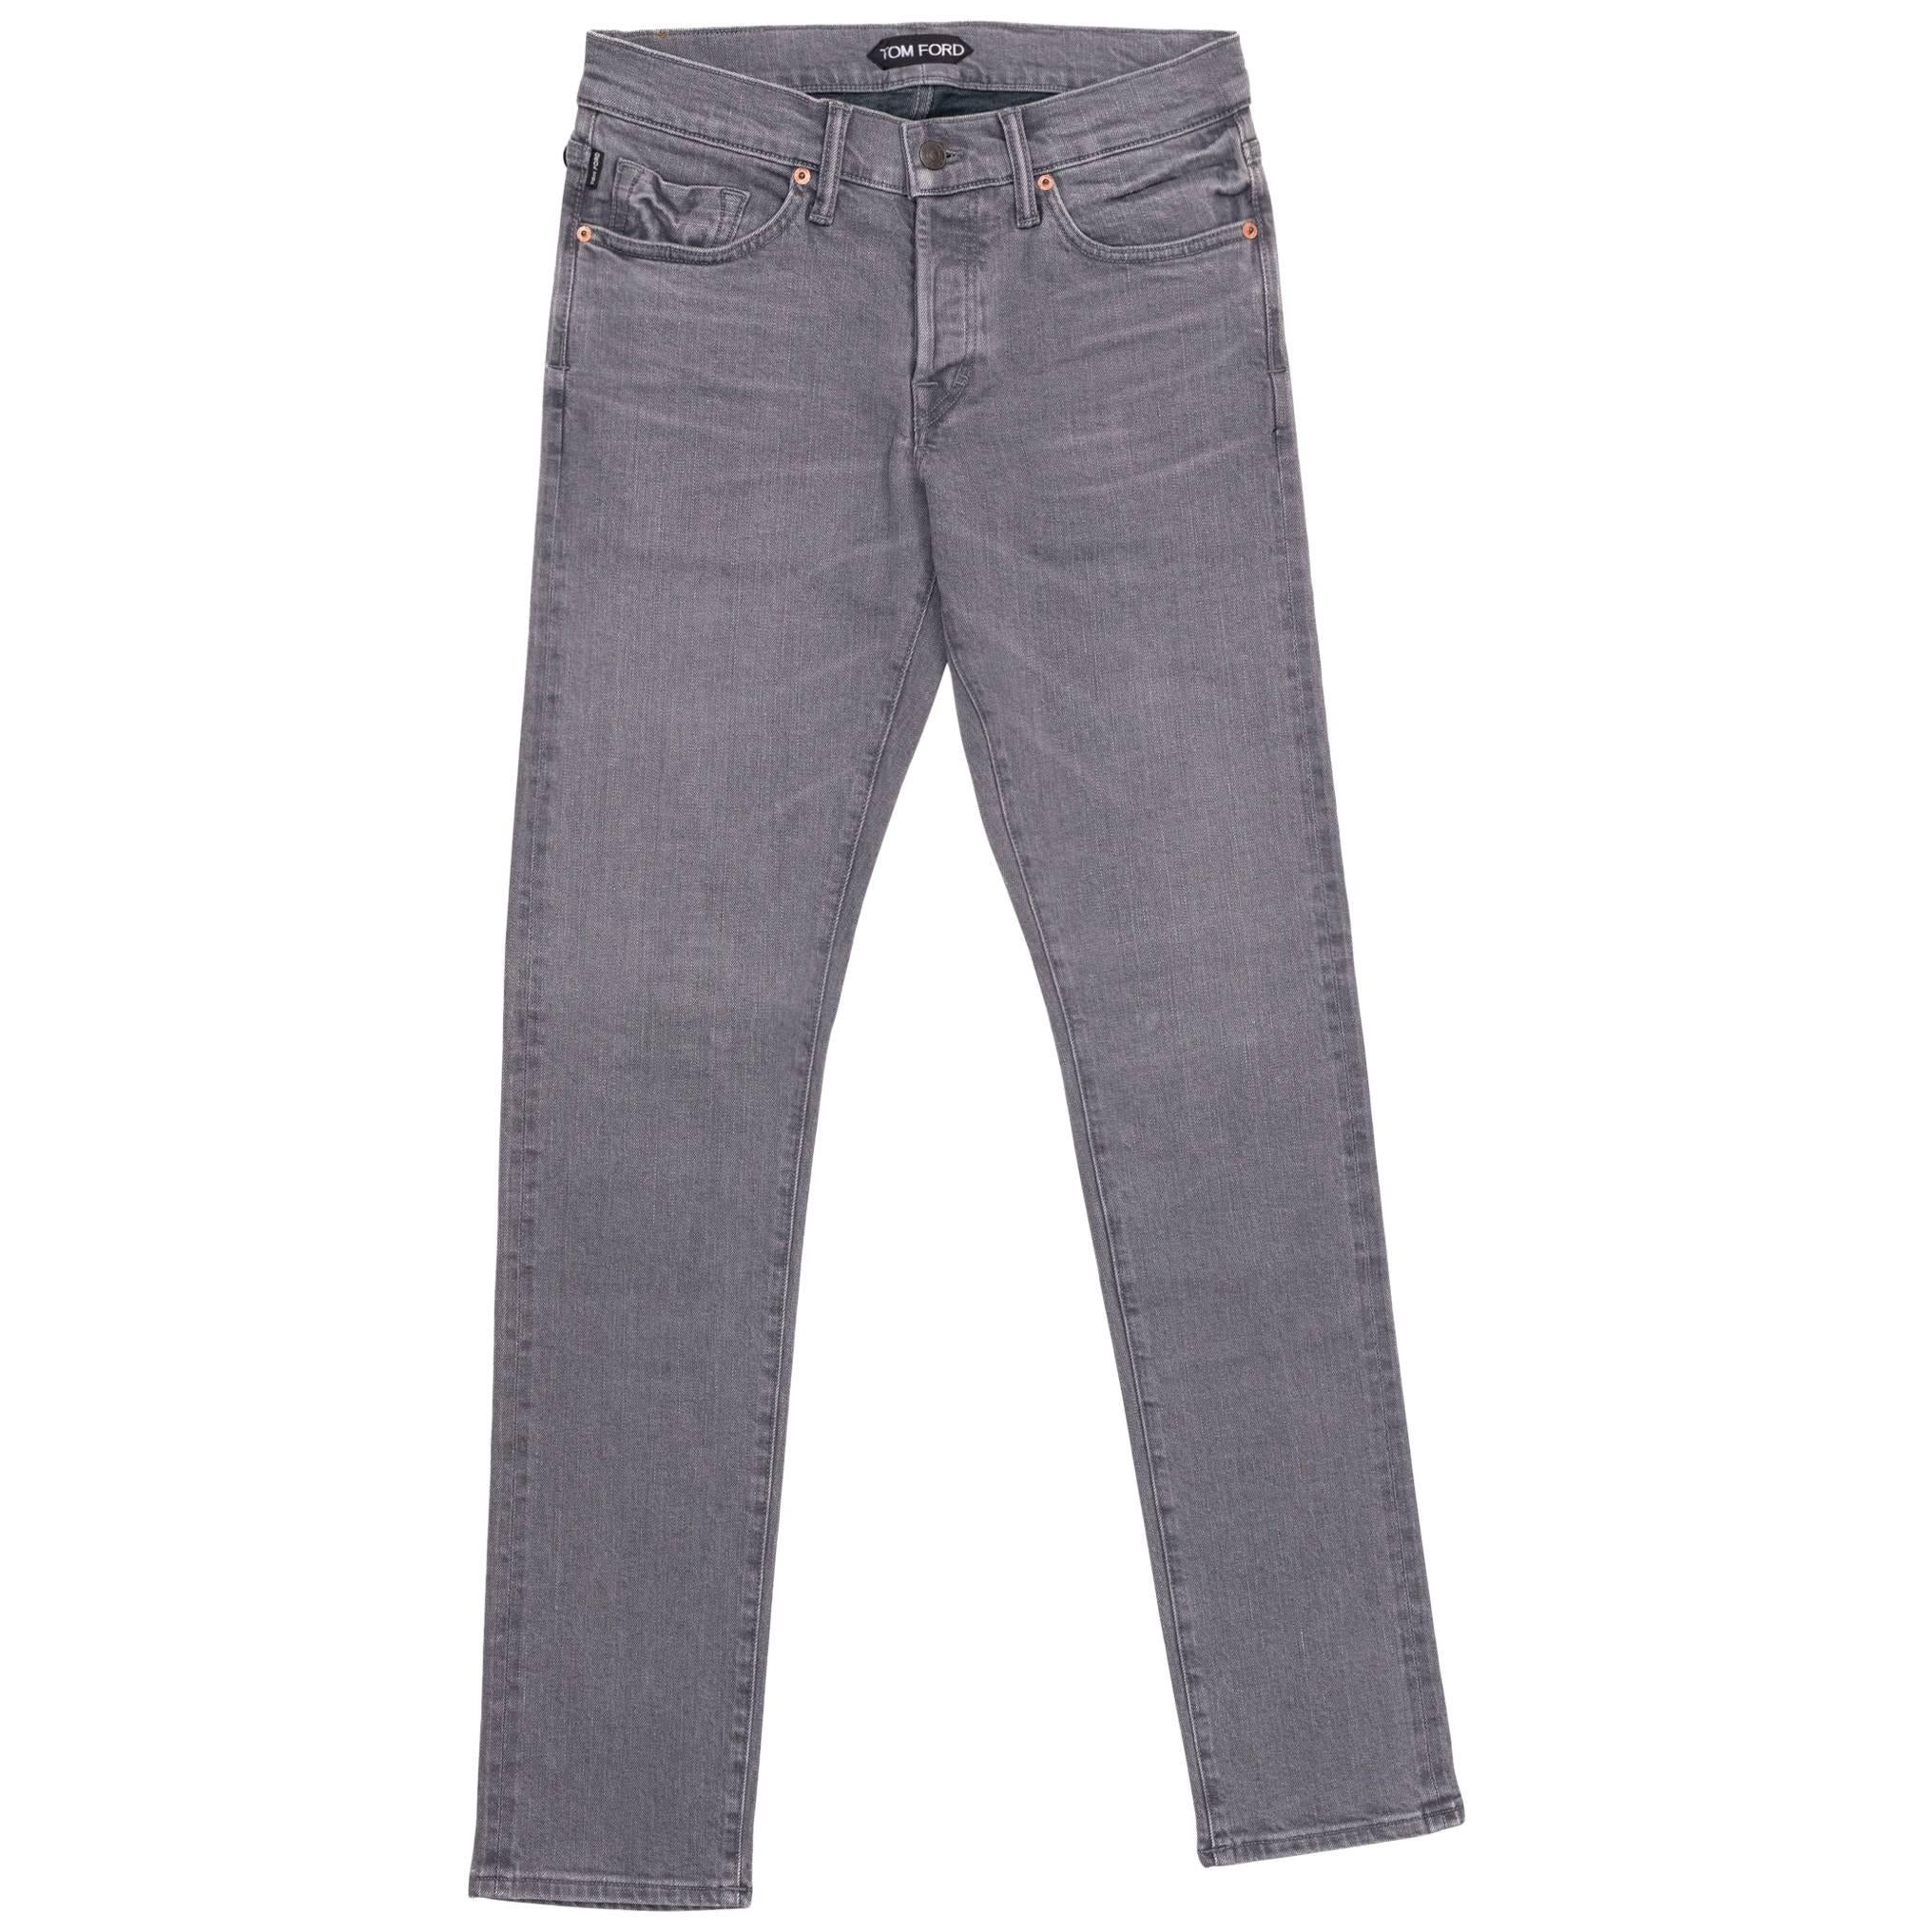 Tom Ford Selvedge Denim Jeans Medium Grey Wash Size 31 Slim Fit Model For Sale